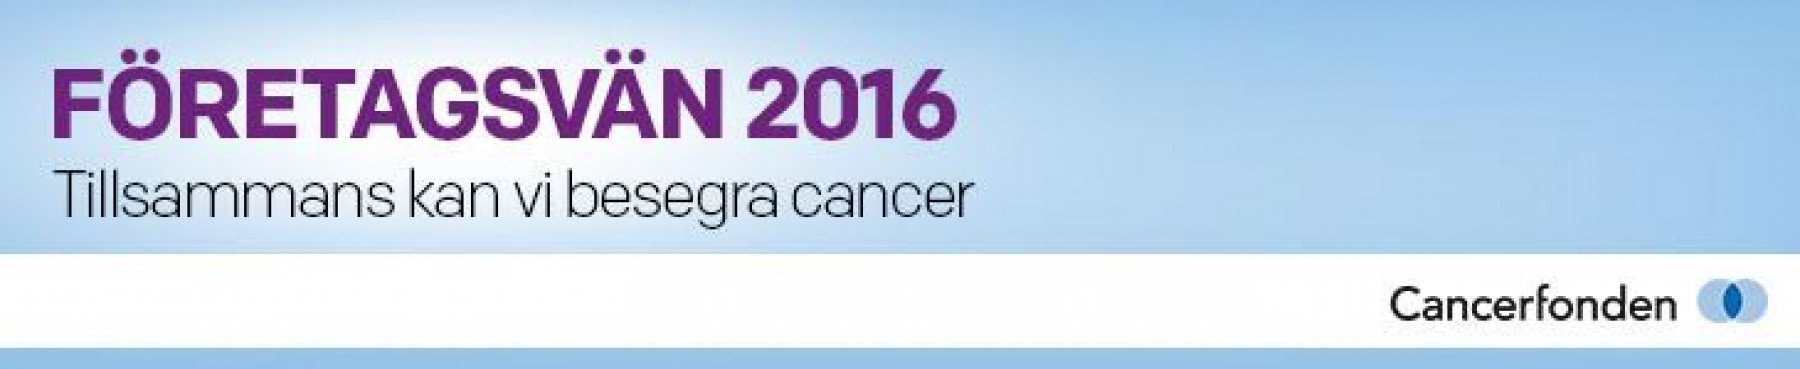 Logotyp med Företagsvän 2016 - Tillsammans kan vi besegra cancer Cancerfonden